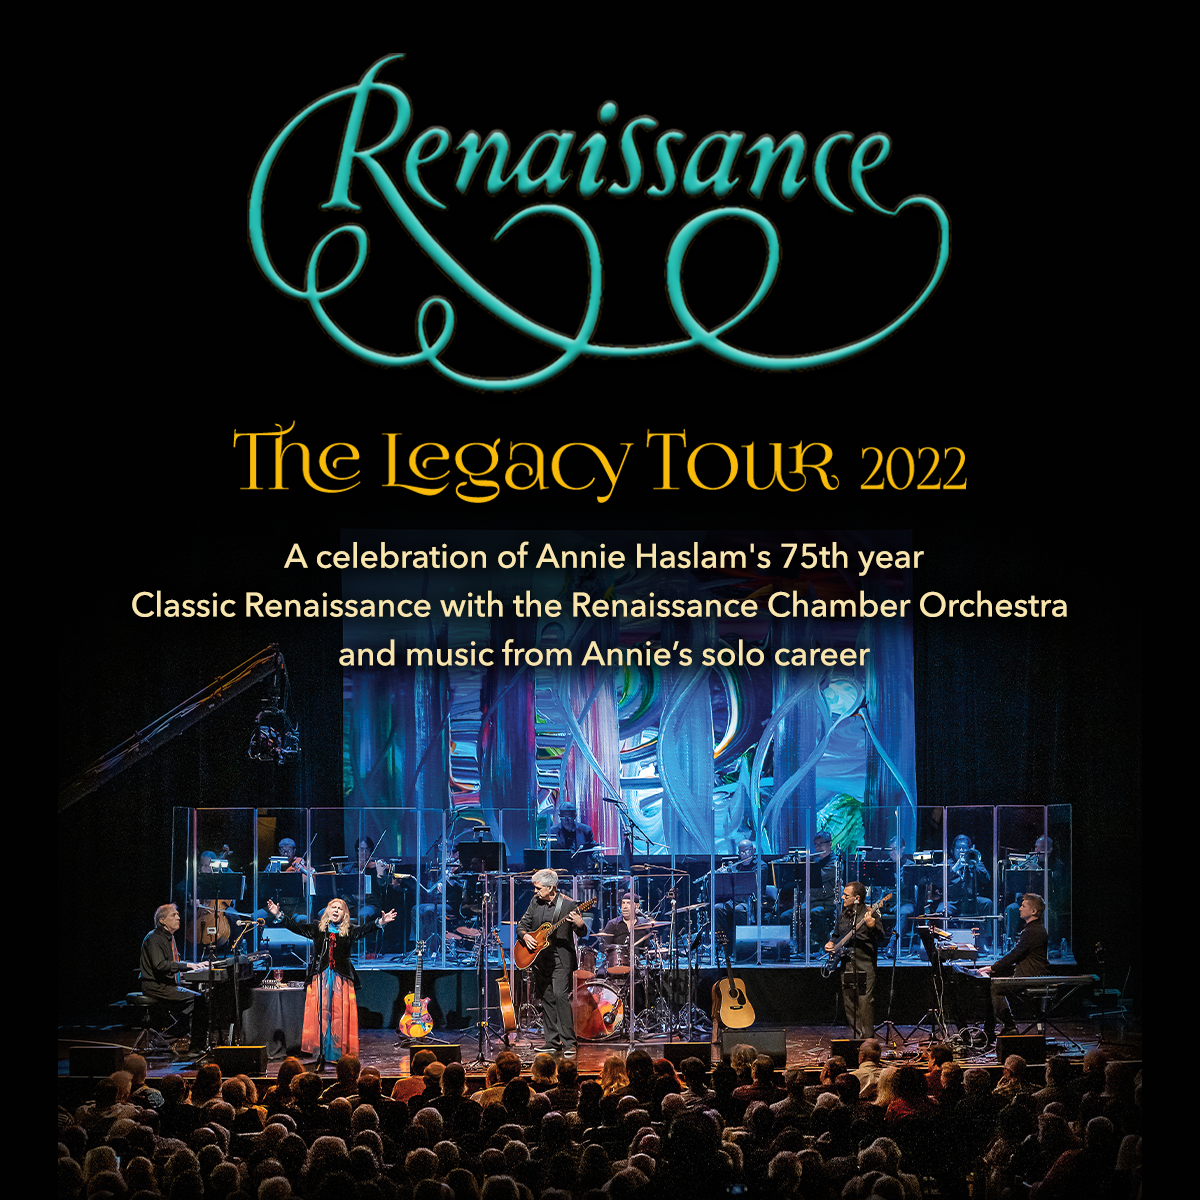 Renaissance The Legacy Tour 2022 Visit CT